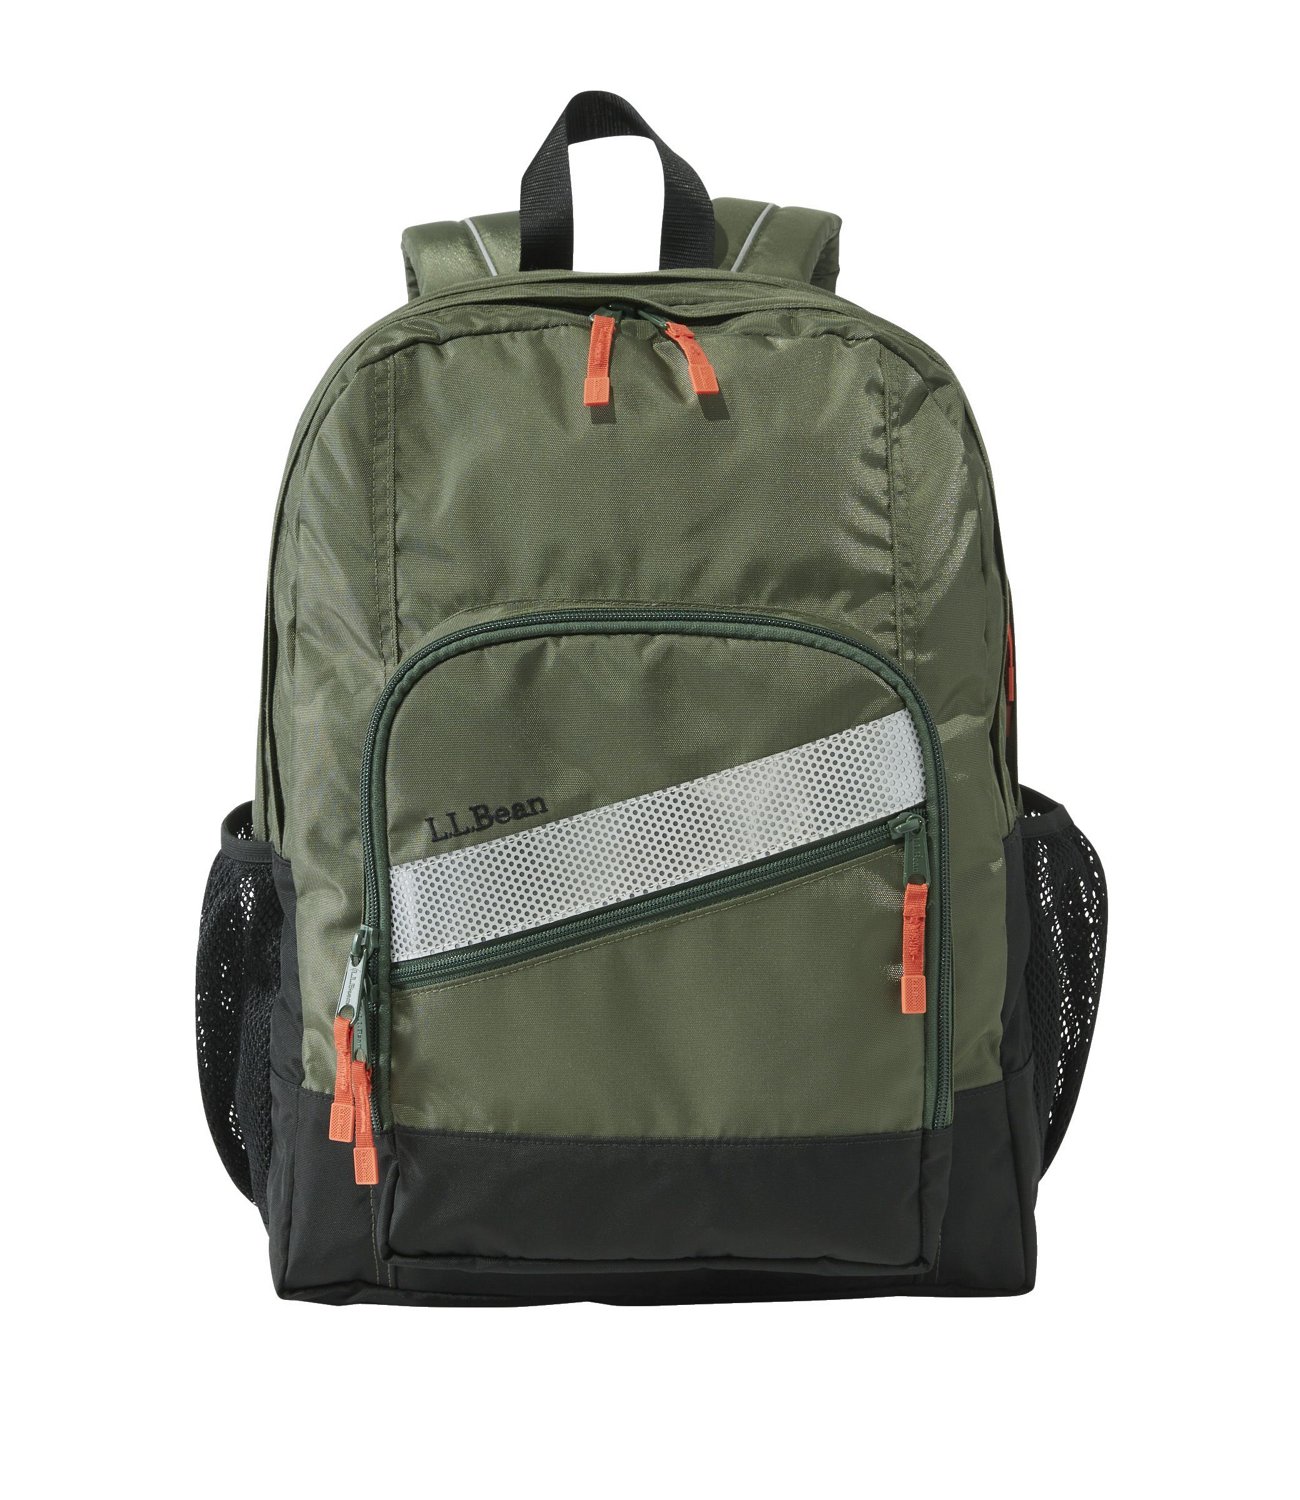 LL BEAN Deluxe Book Pack Backpack Fresh True Teal School Hike Camp Kid  Adult EC